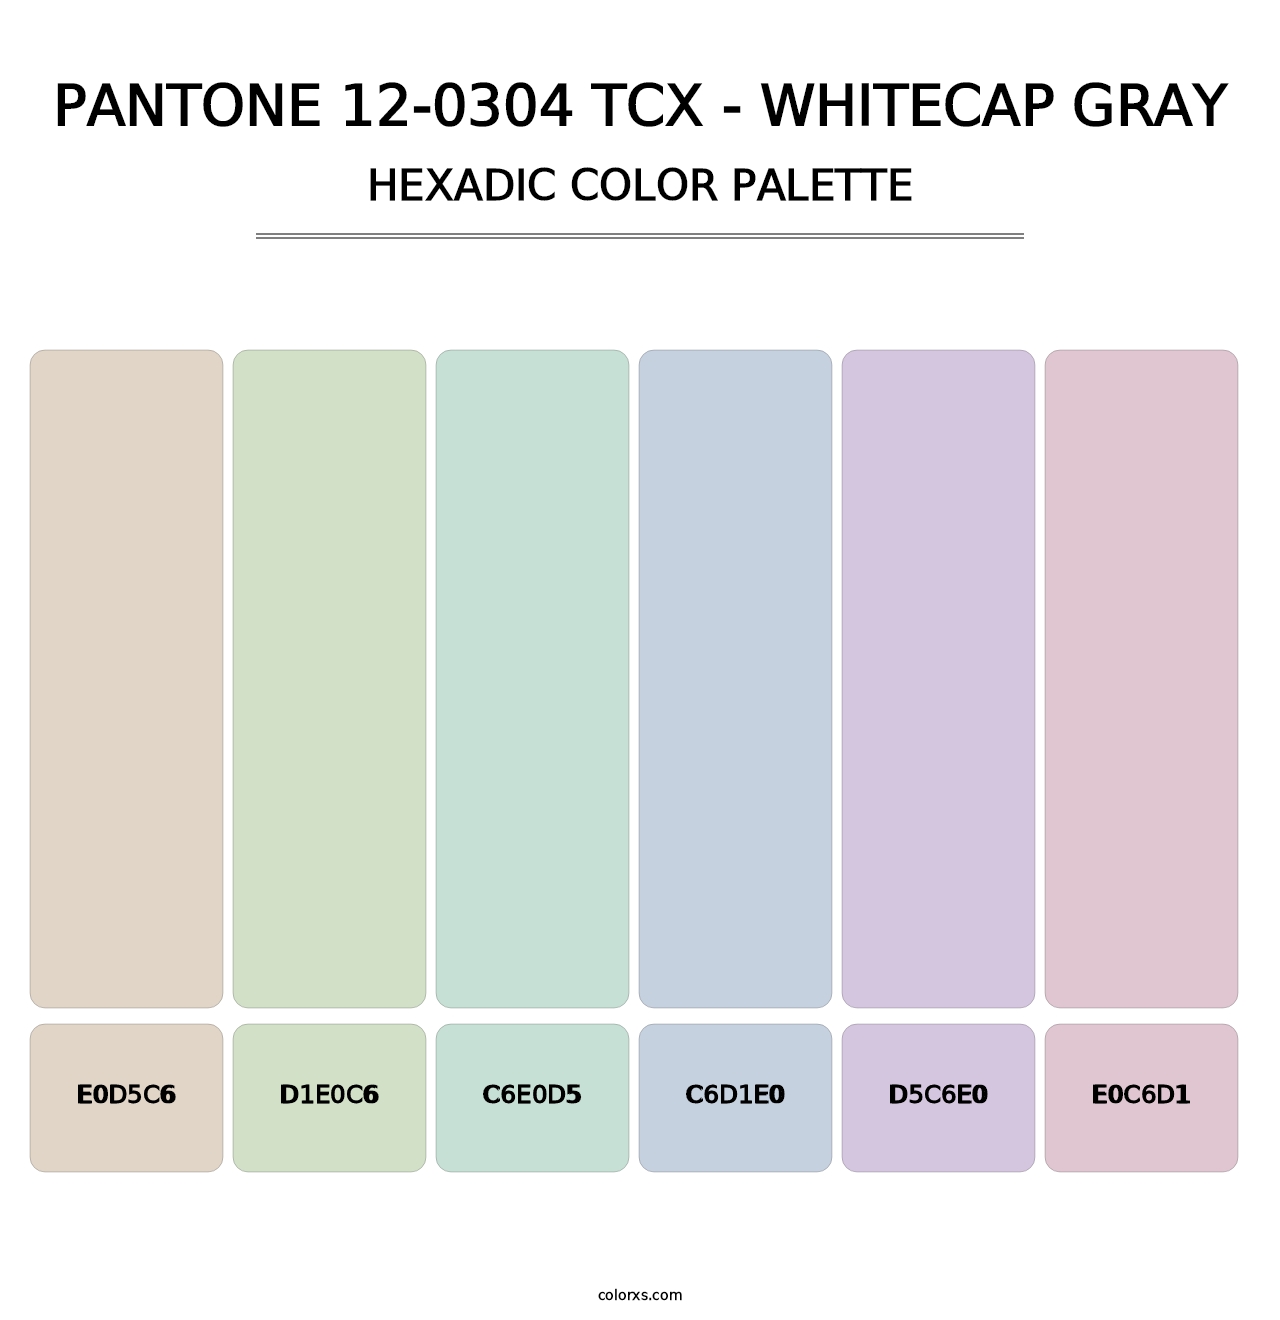 PANTONE 12-0304 TCX - Whitecap Gray - Hexadic Color Palette